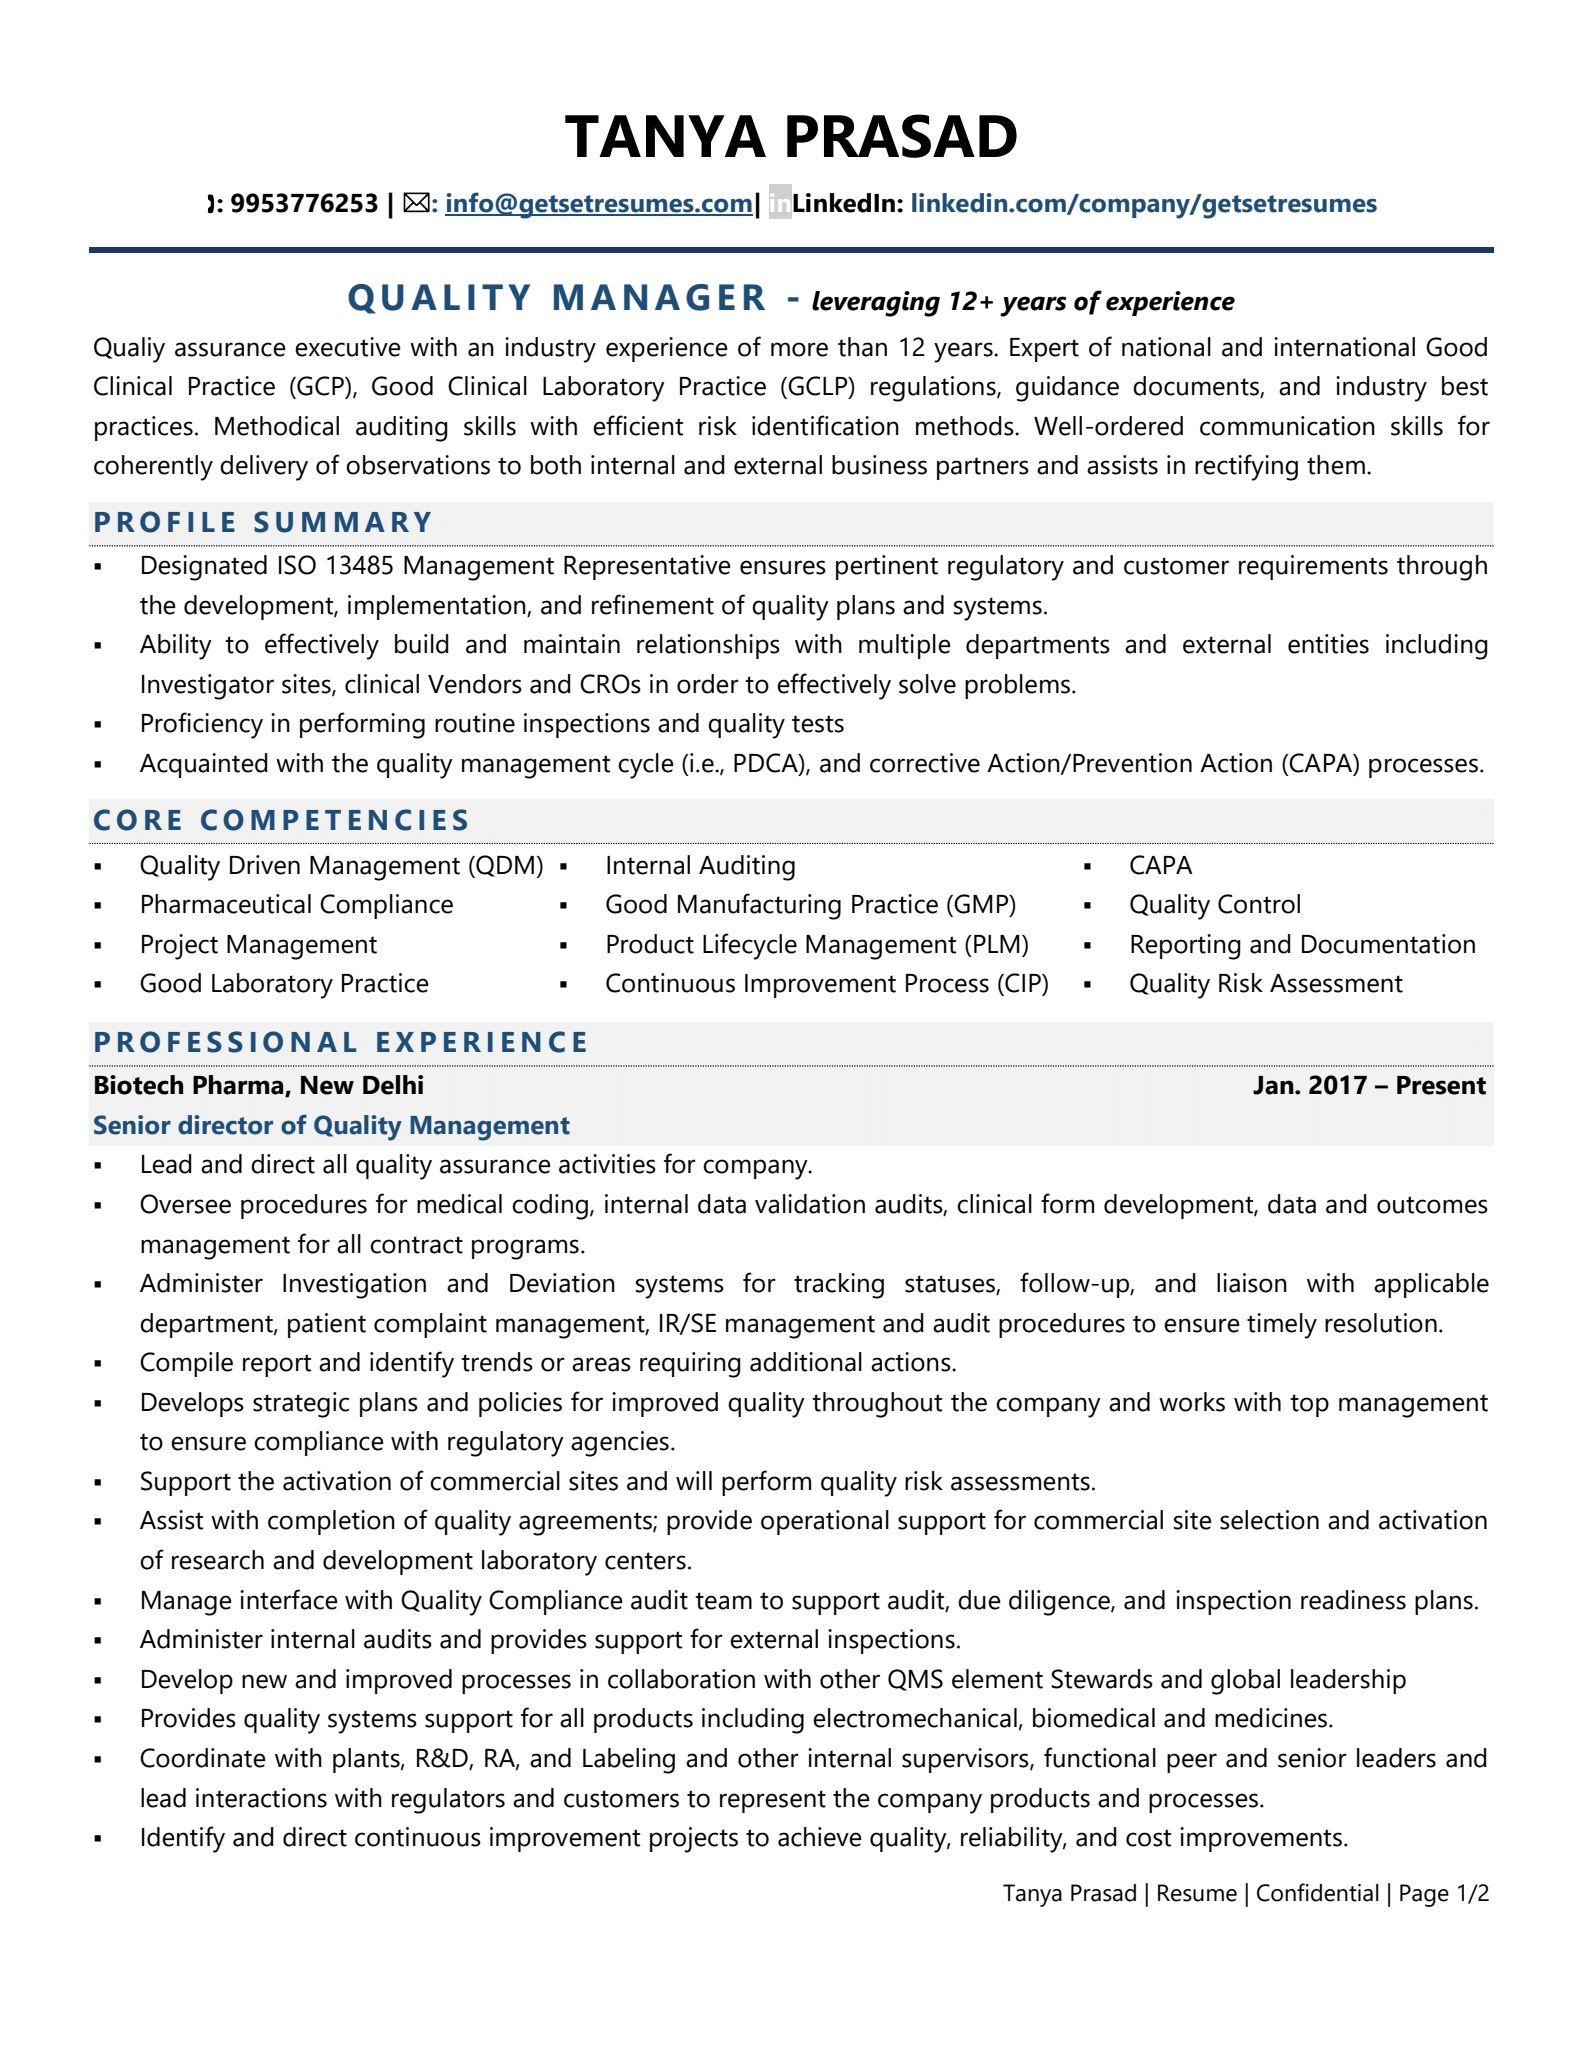 resume format for qa officer in pharma